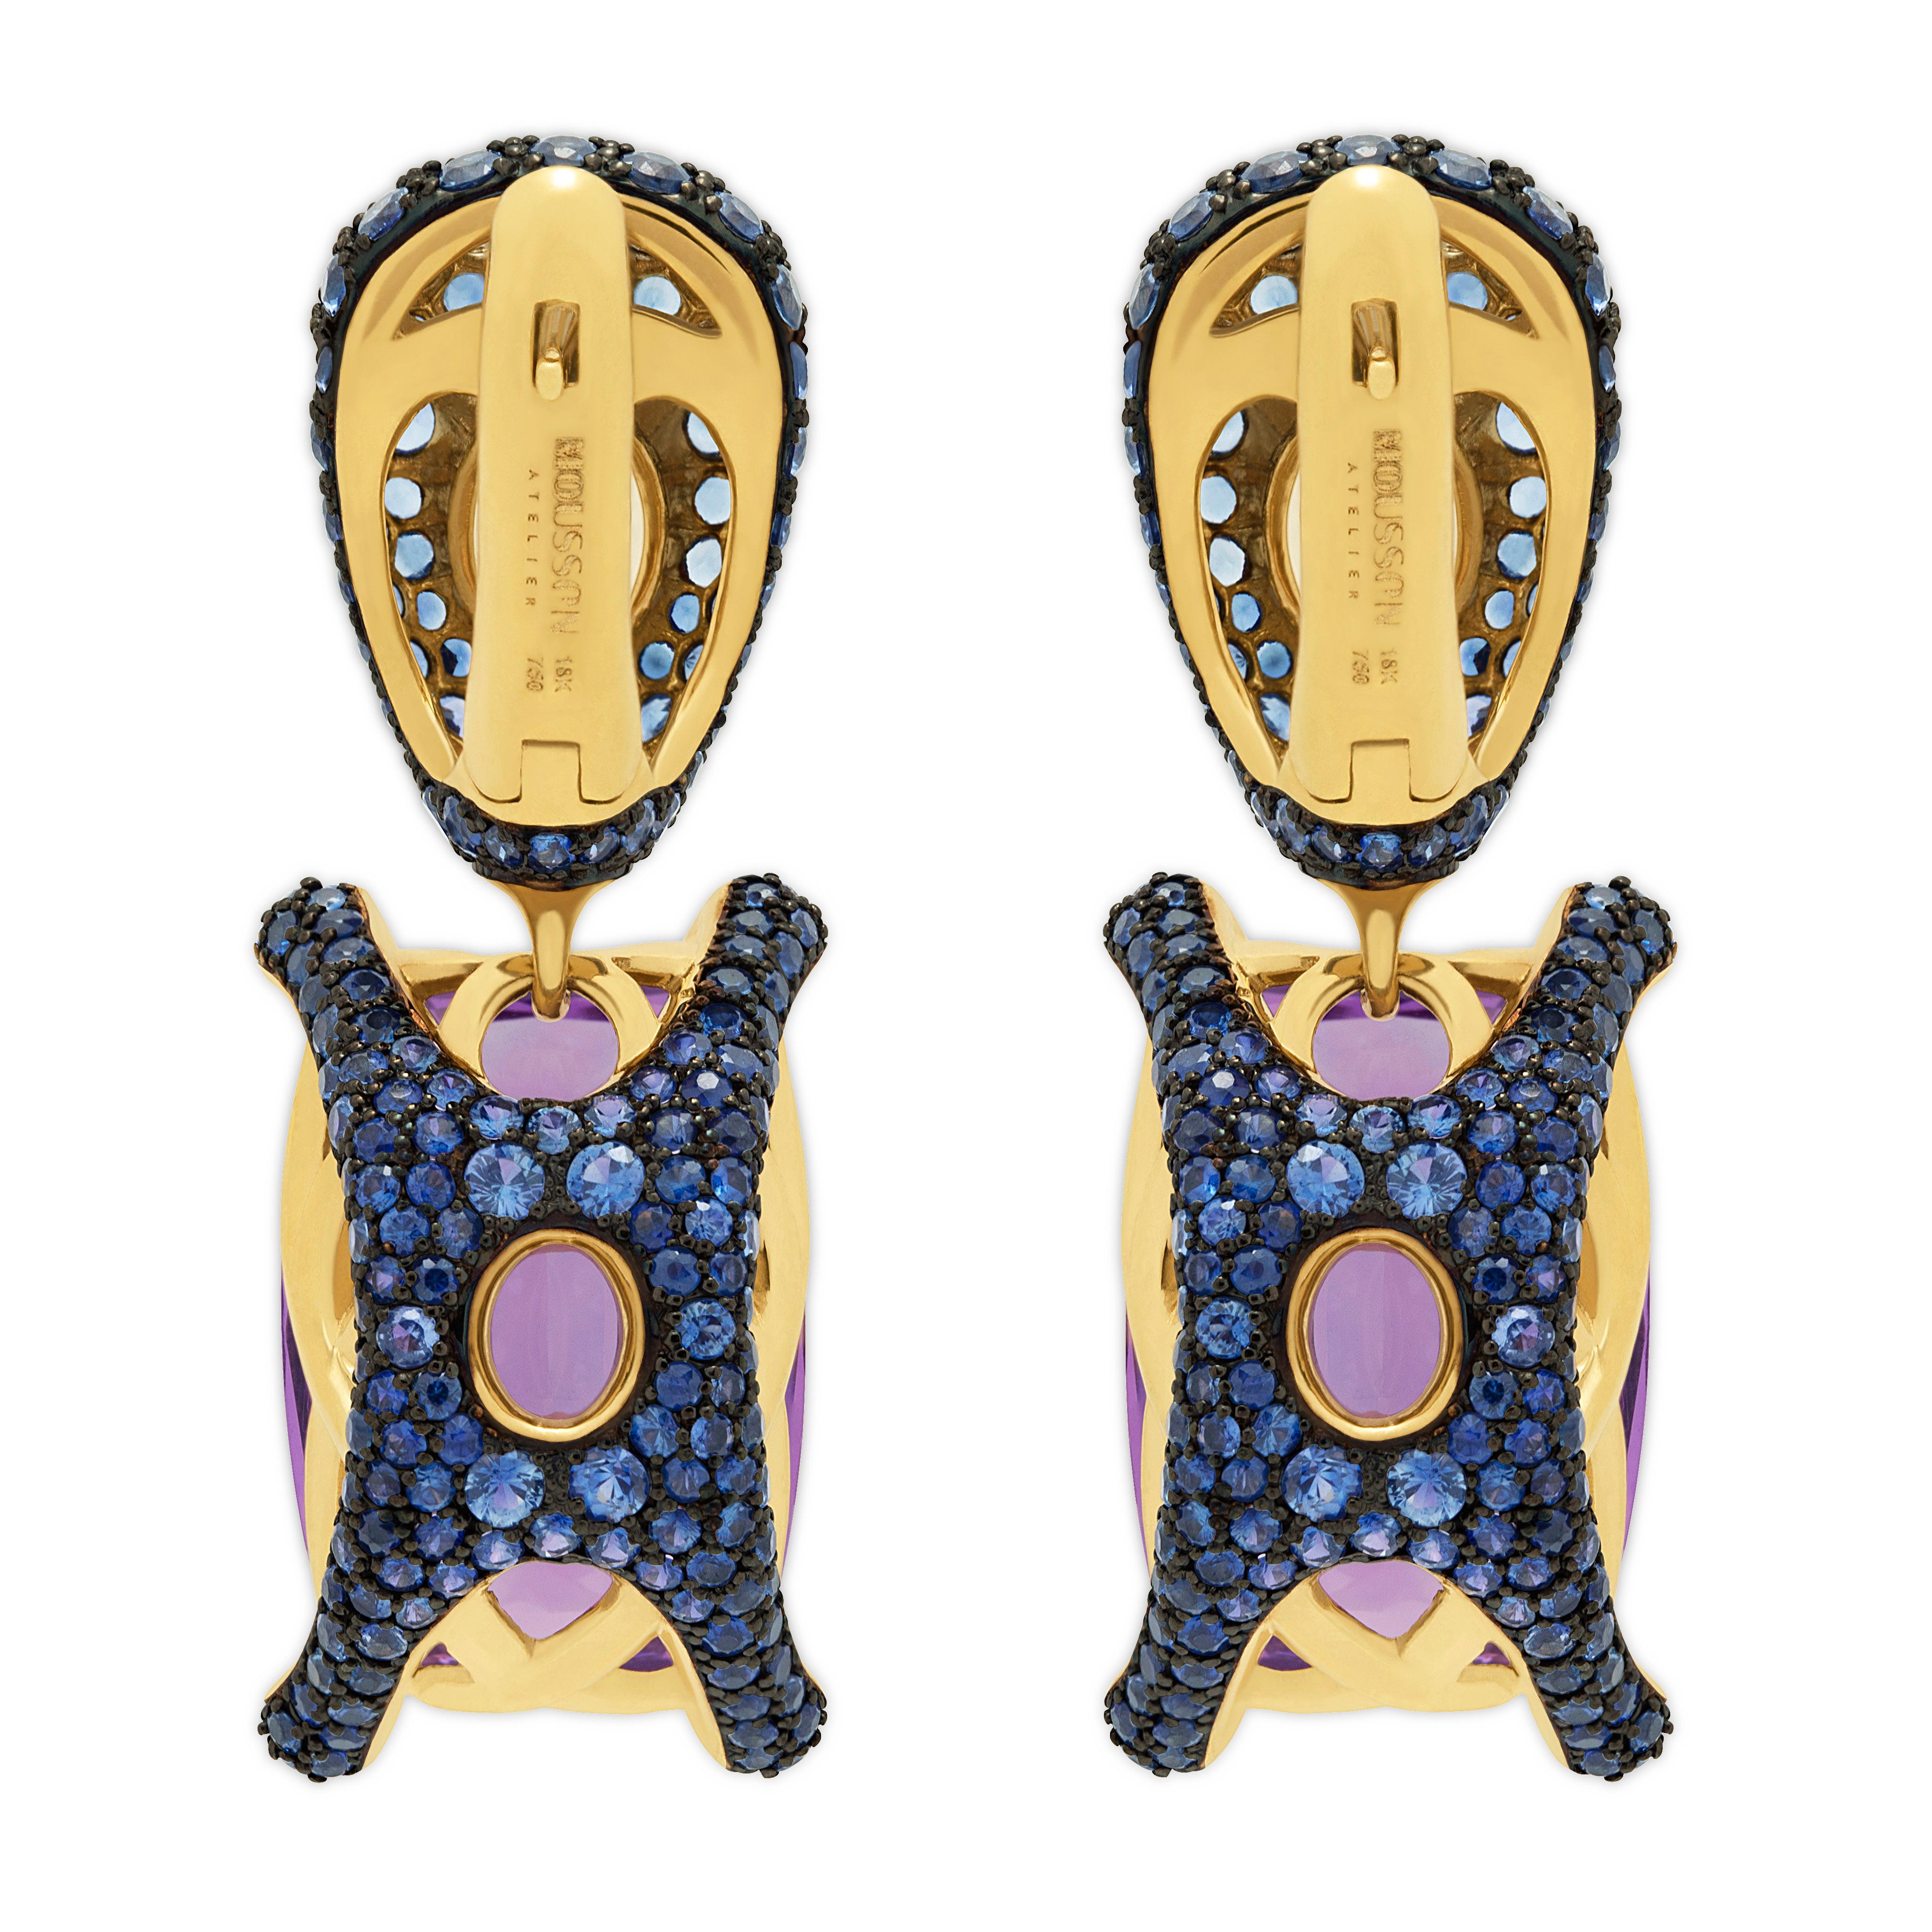 Amethyst 18,50 Karat Blaue Saphire 18 Karat Gelbgold Ohrringe
Zwei Amethyste mit 18,50 Karat und 536 blaue Saphire mit einem Gewicht von 4,98 Karat sind auf einem mit schwarzem Rhodium ausgekleideten 18 Karat Gold montiert. Er zeigt ein fesselndes